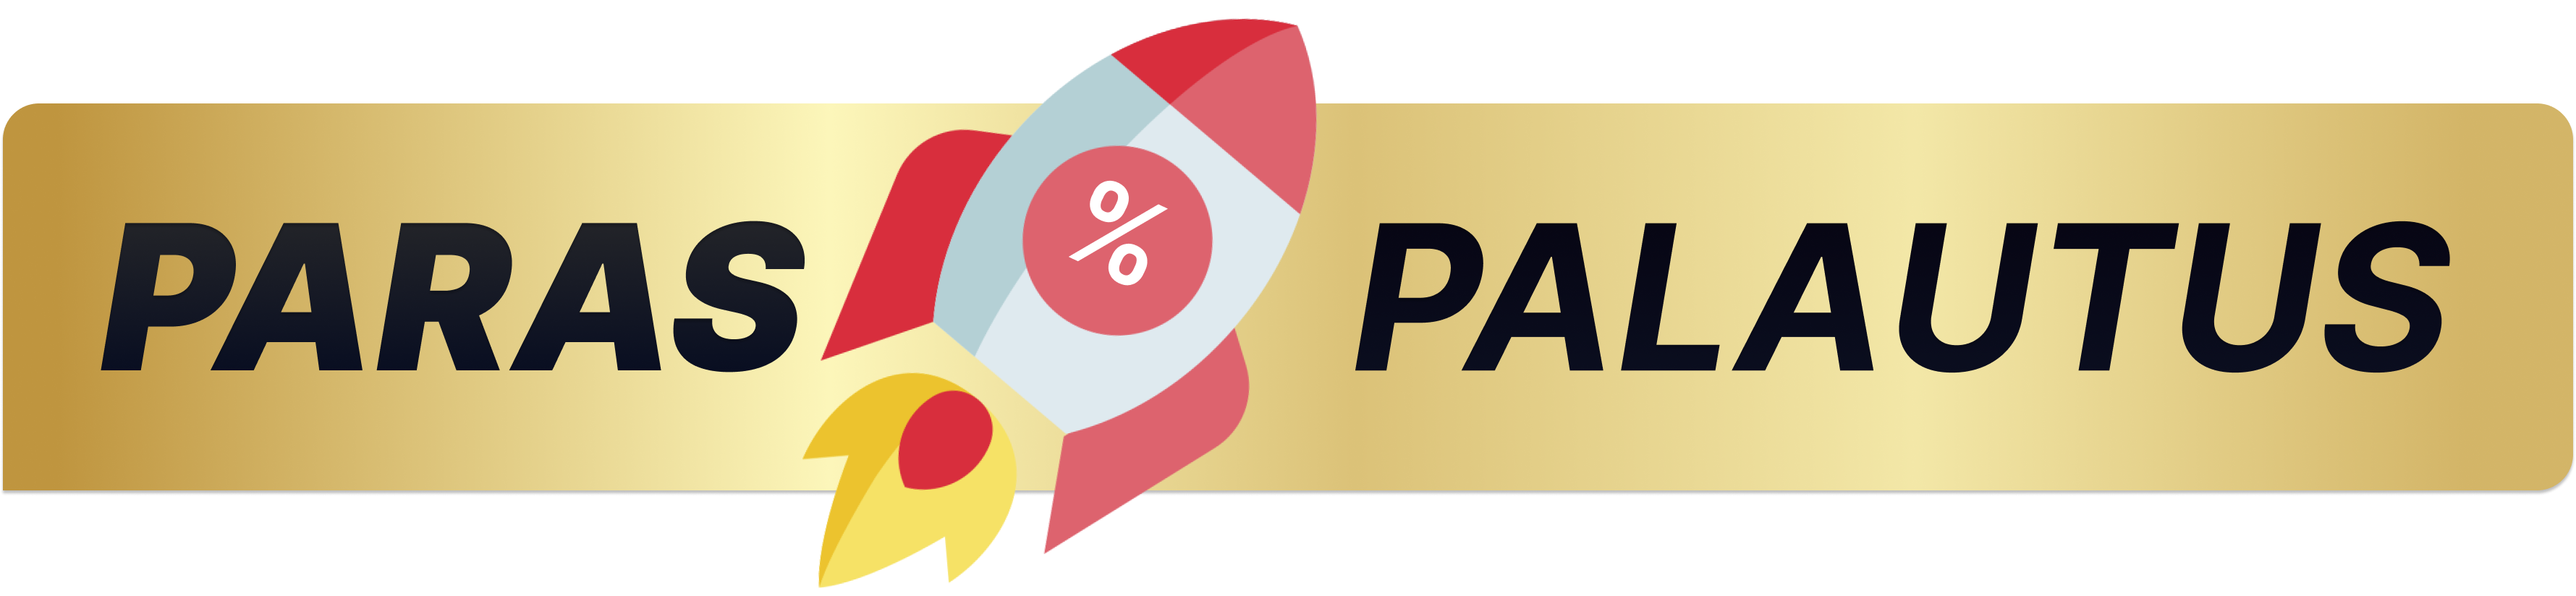 Paras Palautus -sivuston logo, joka sisältää raketin kuvan ja tekstin 'PARAS PALAUTUS' keltaisella pohjalla.